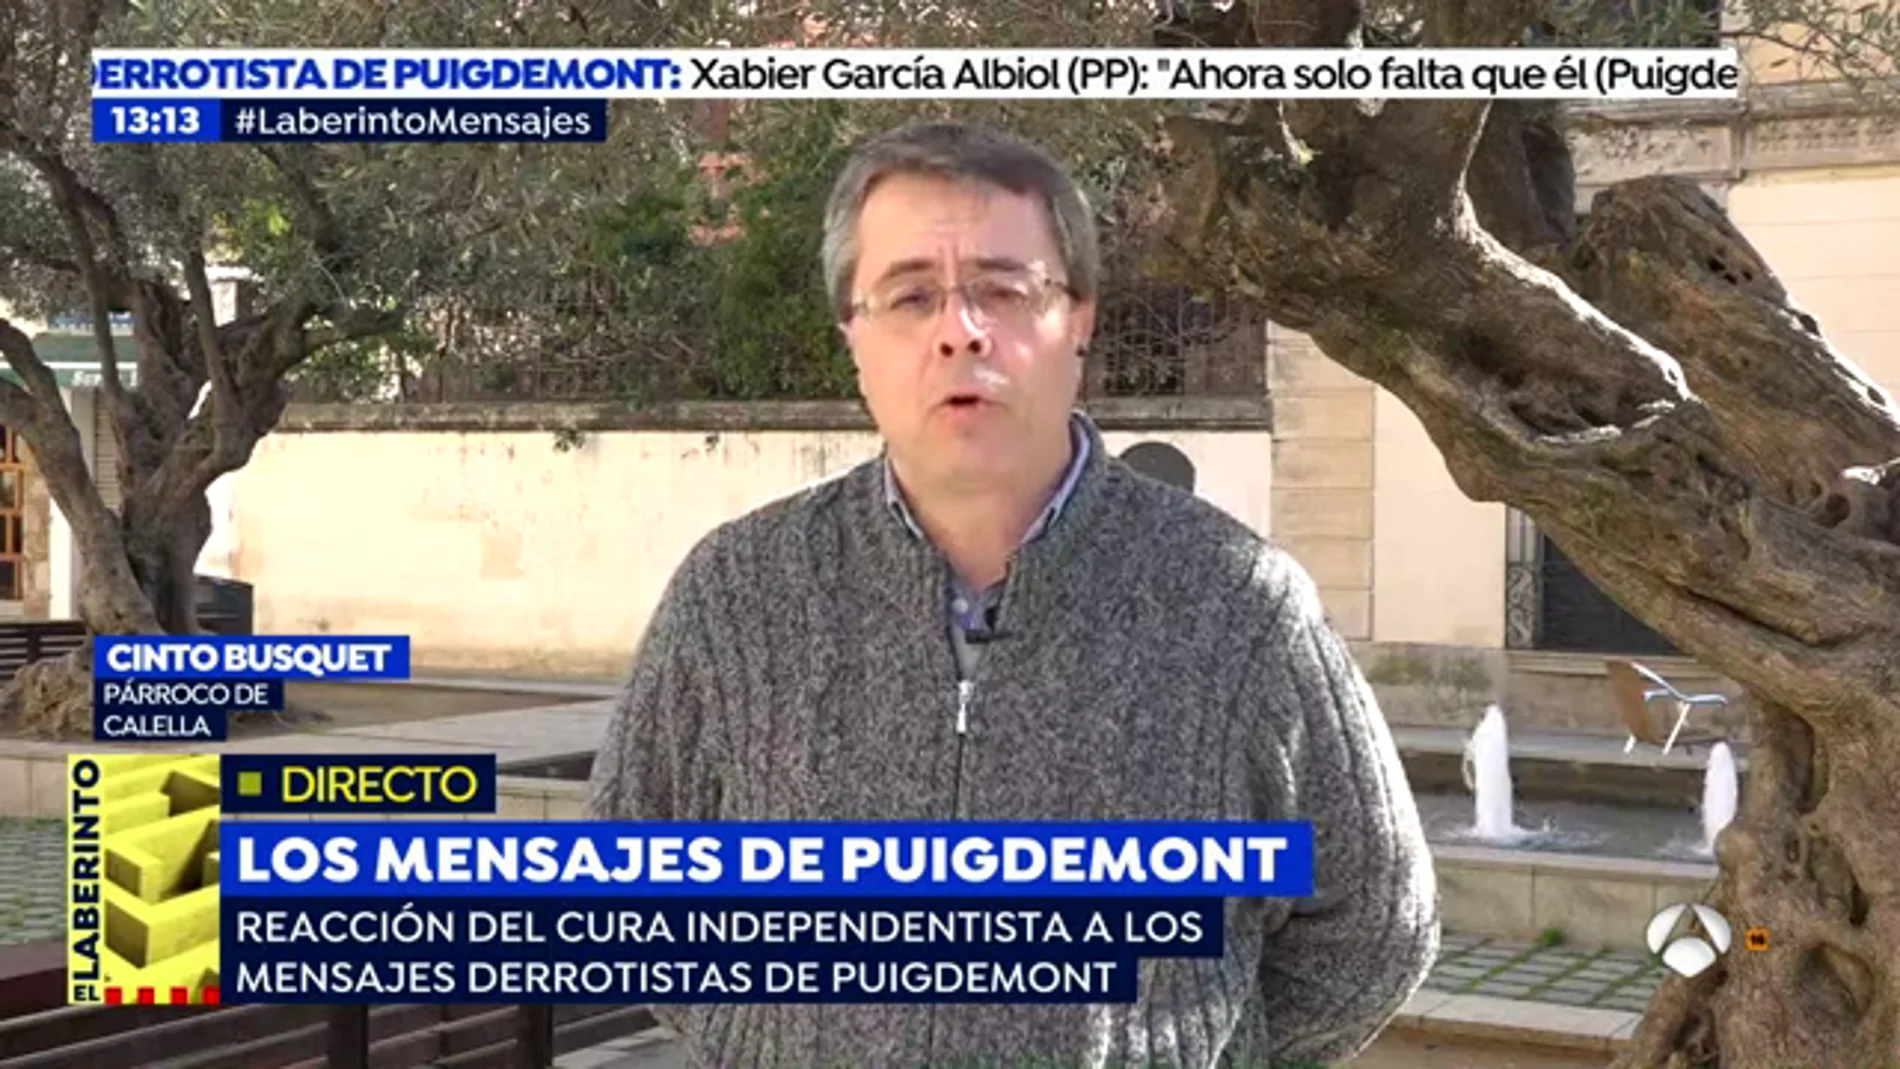 El párroco de Calella, sobre los mensajes difundidos de Puigdemont: "Me parece bastante triste entrar en una conversación privada"